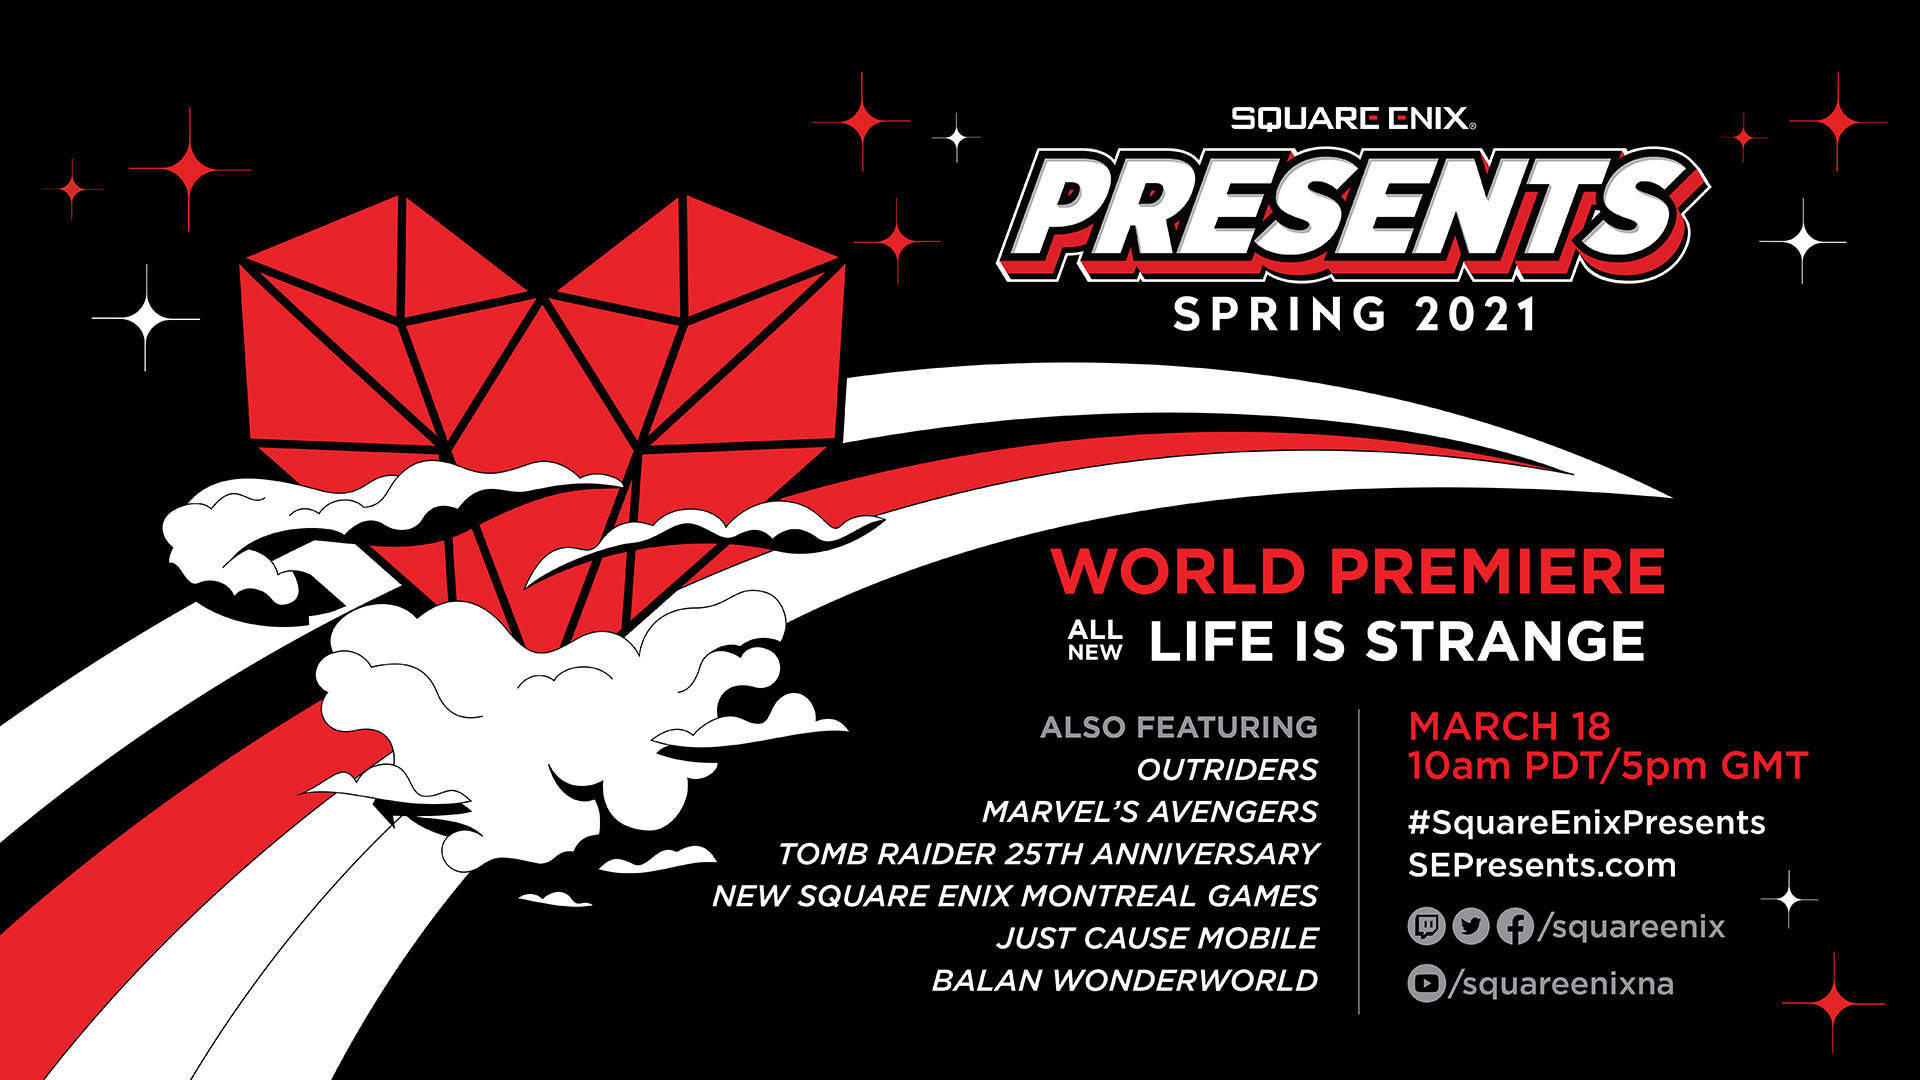 日本時間3月19日深夜2:00にスクエニの新情報を発表するプログラム「SQUARE ENIX PRESENTS」が配信決定。『Life is Strange』の新作や『Outriders』に関する発表が予告_001